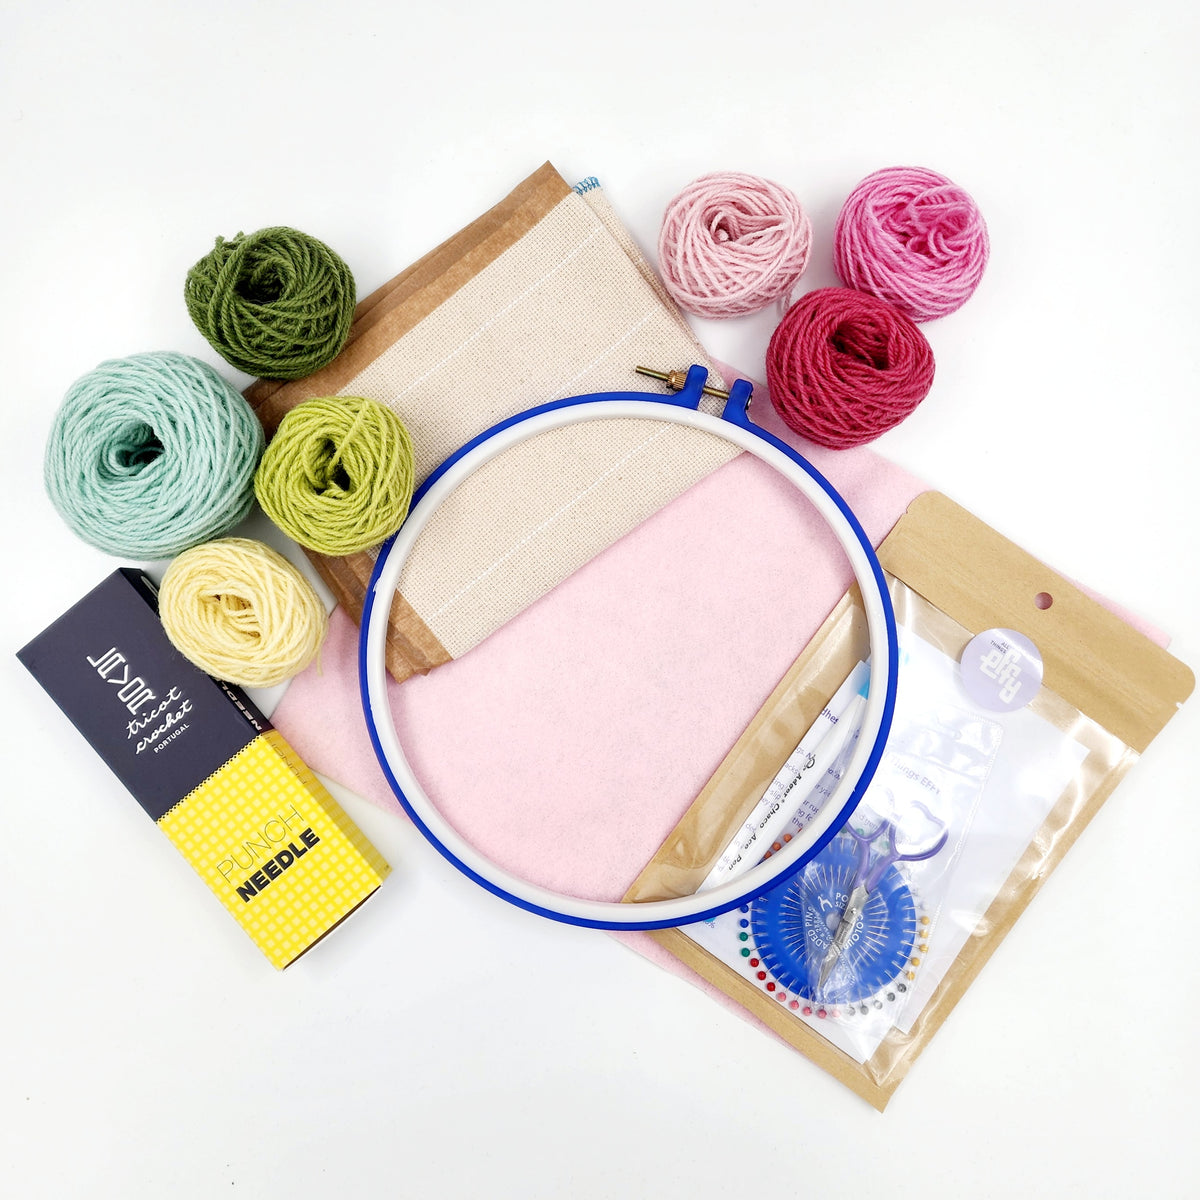 DIY punch needle kit, rainbow, craft kit, crafty gift, rug hooking